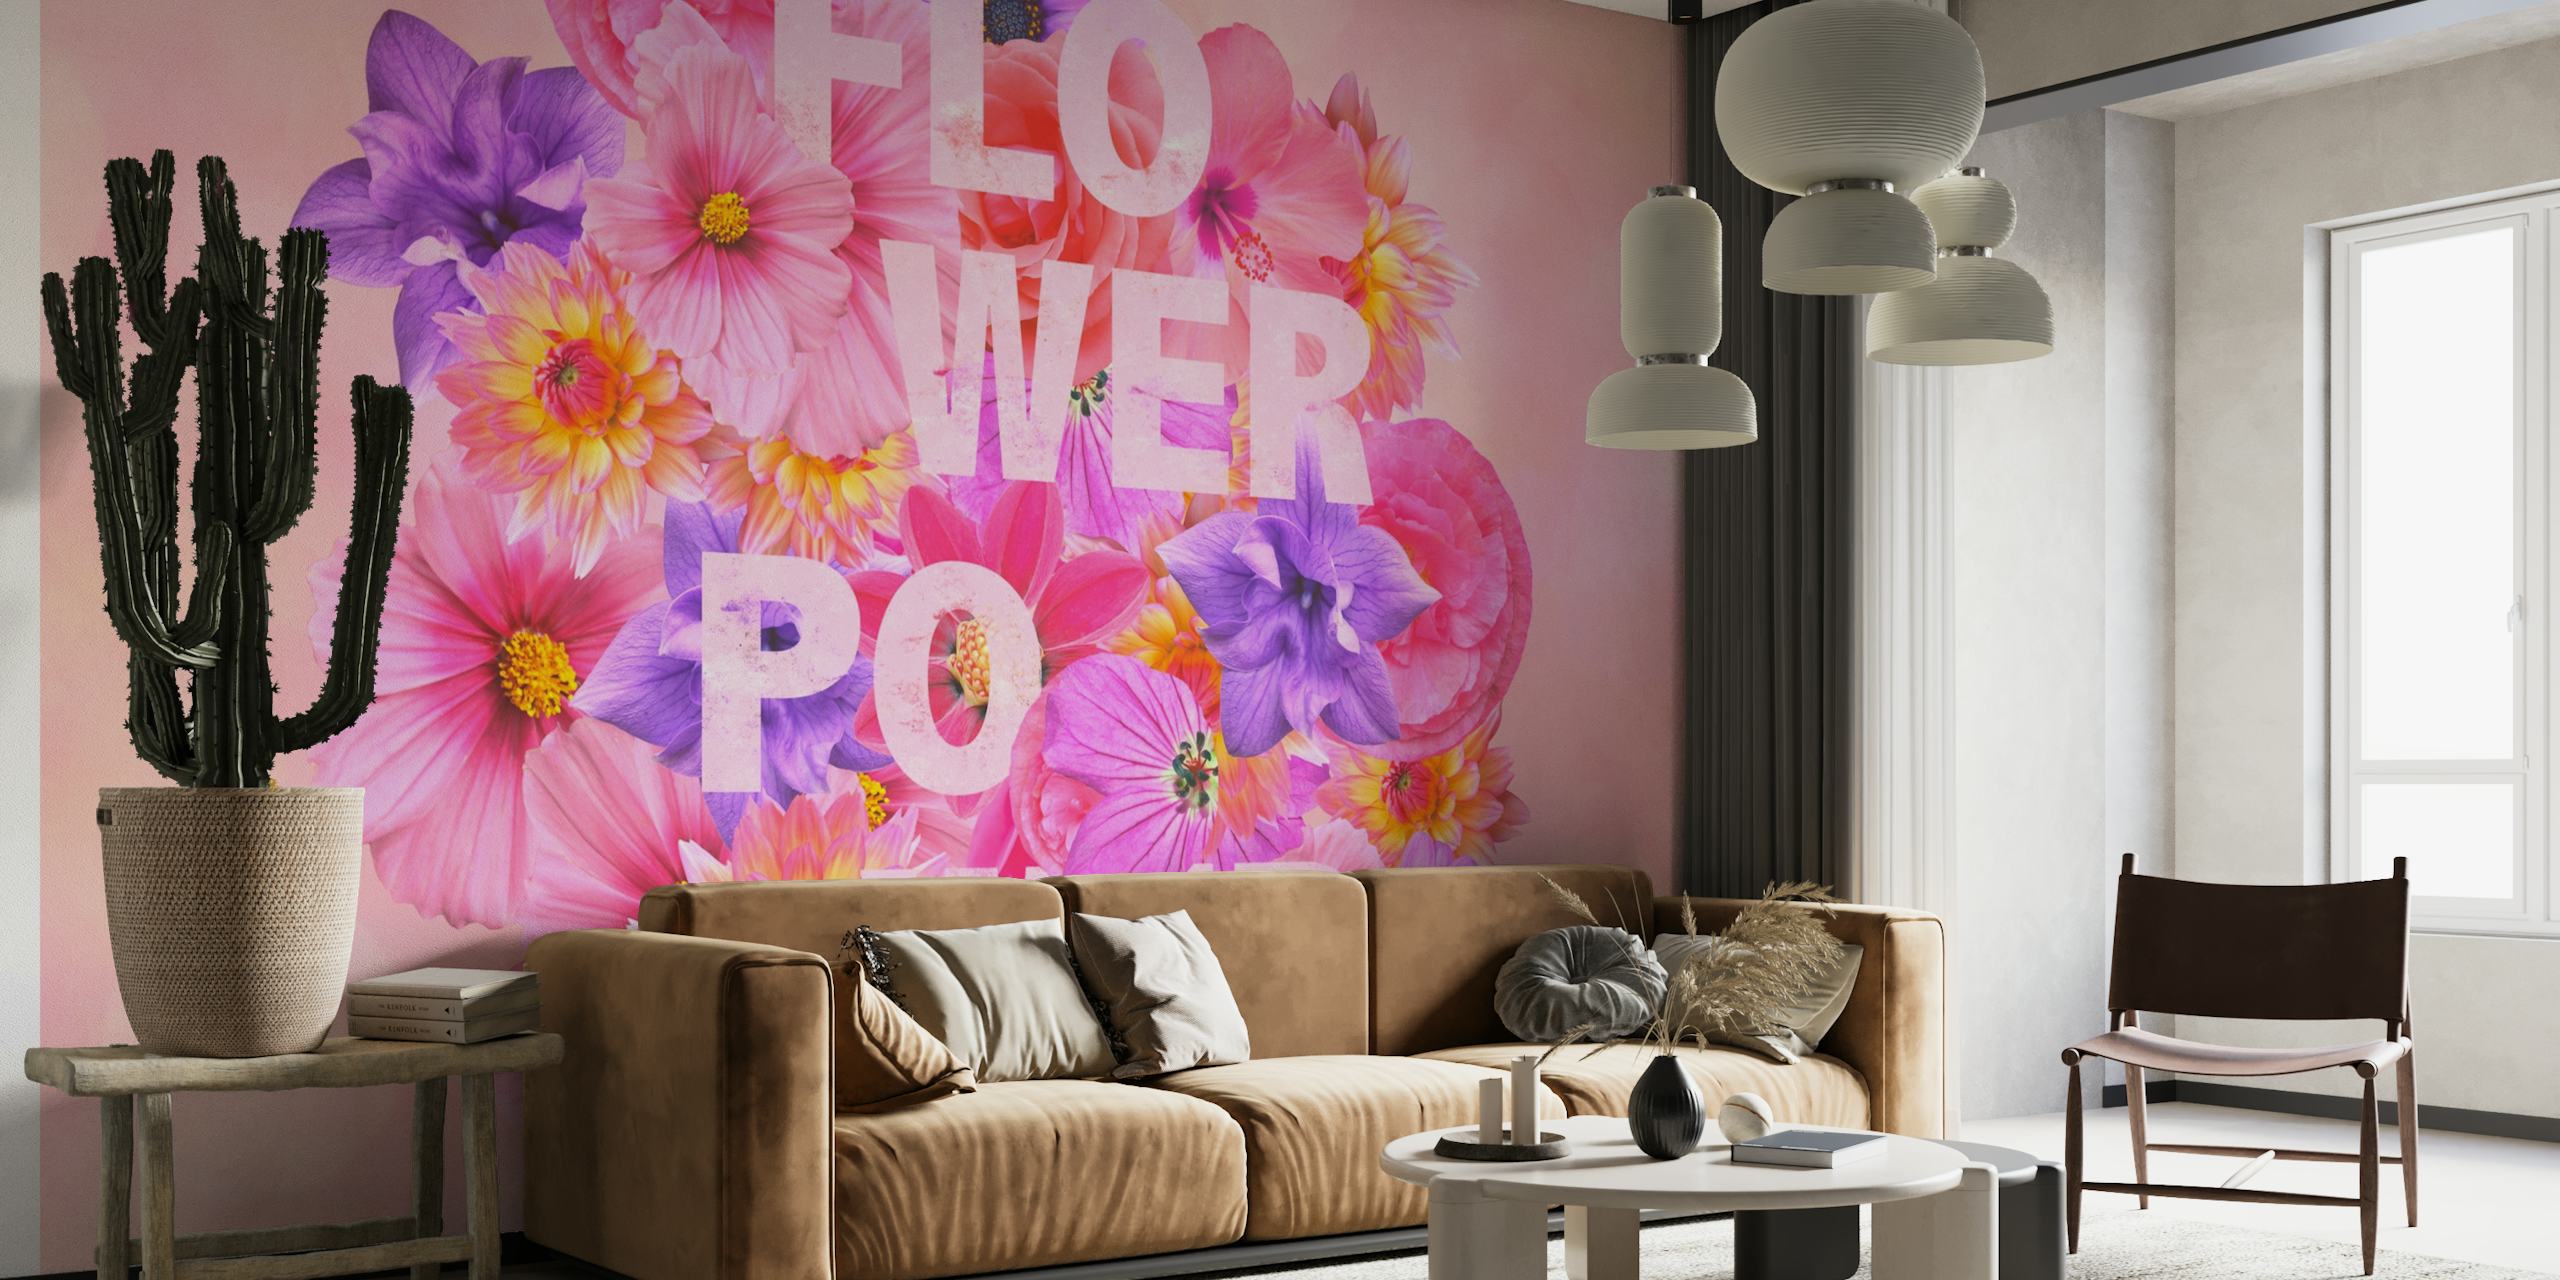 Šareni cvjetni zidni mural s tekstom "Flower Power".